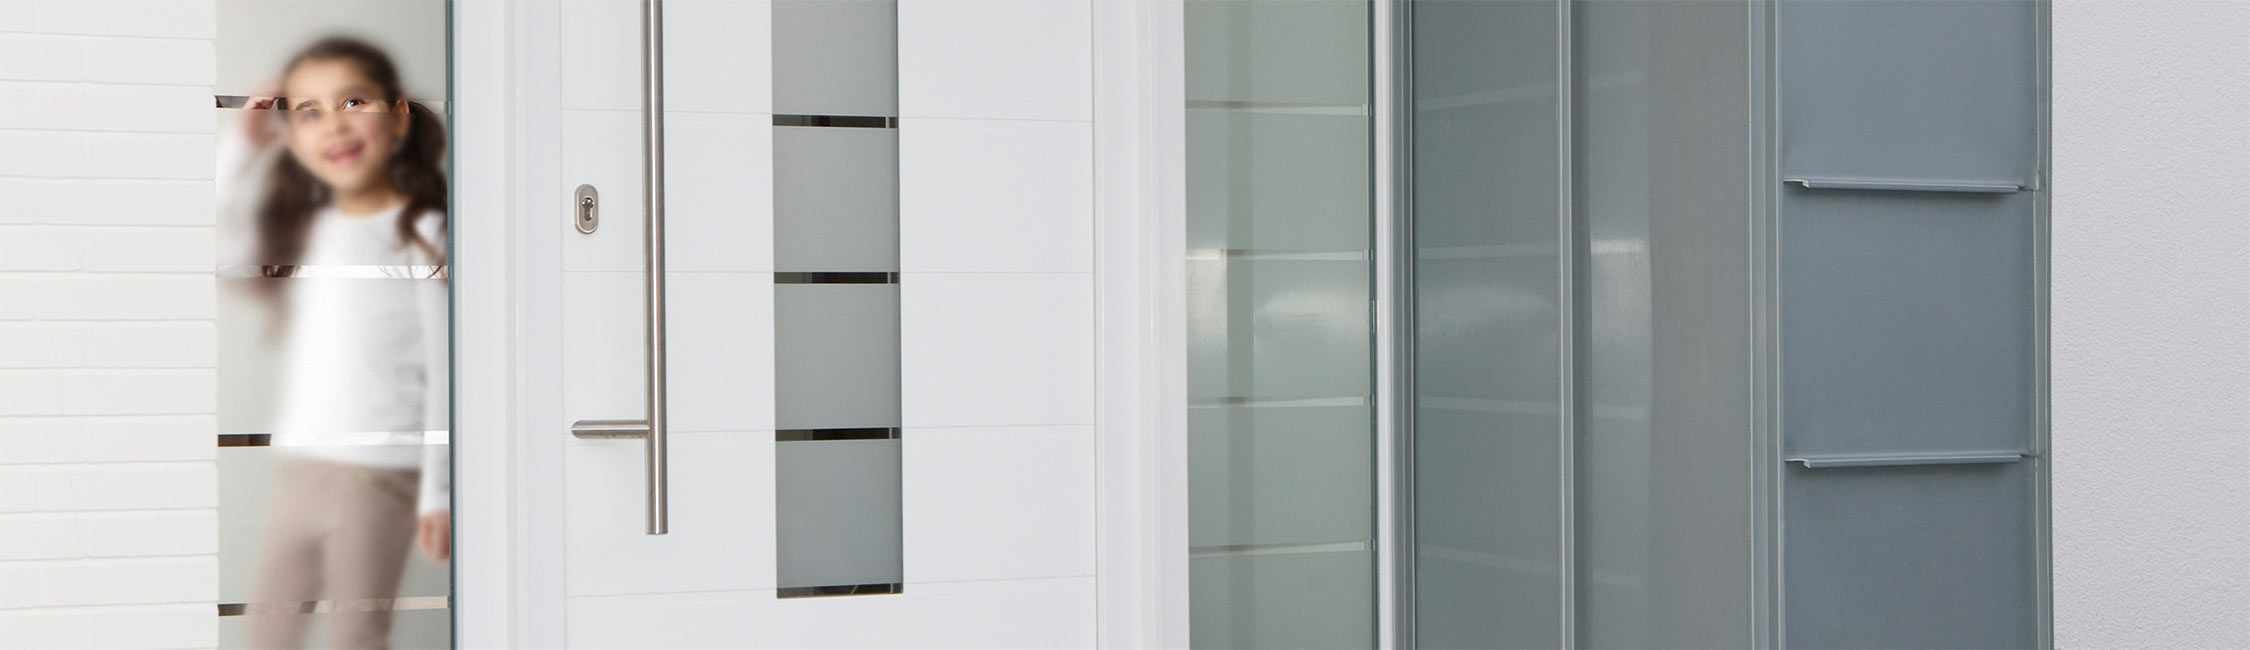 M. Bahlo Tischlerei GmbH - Fensterbau aus Peheim - Startbild 1